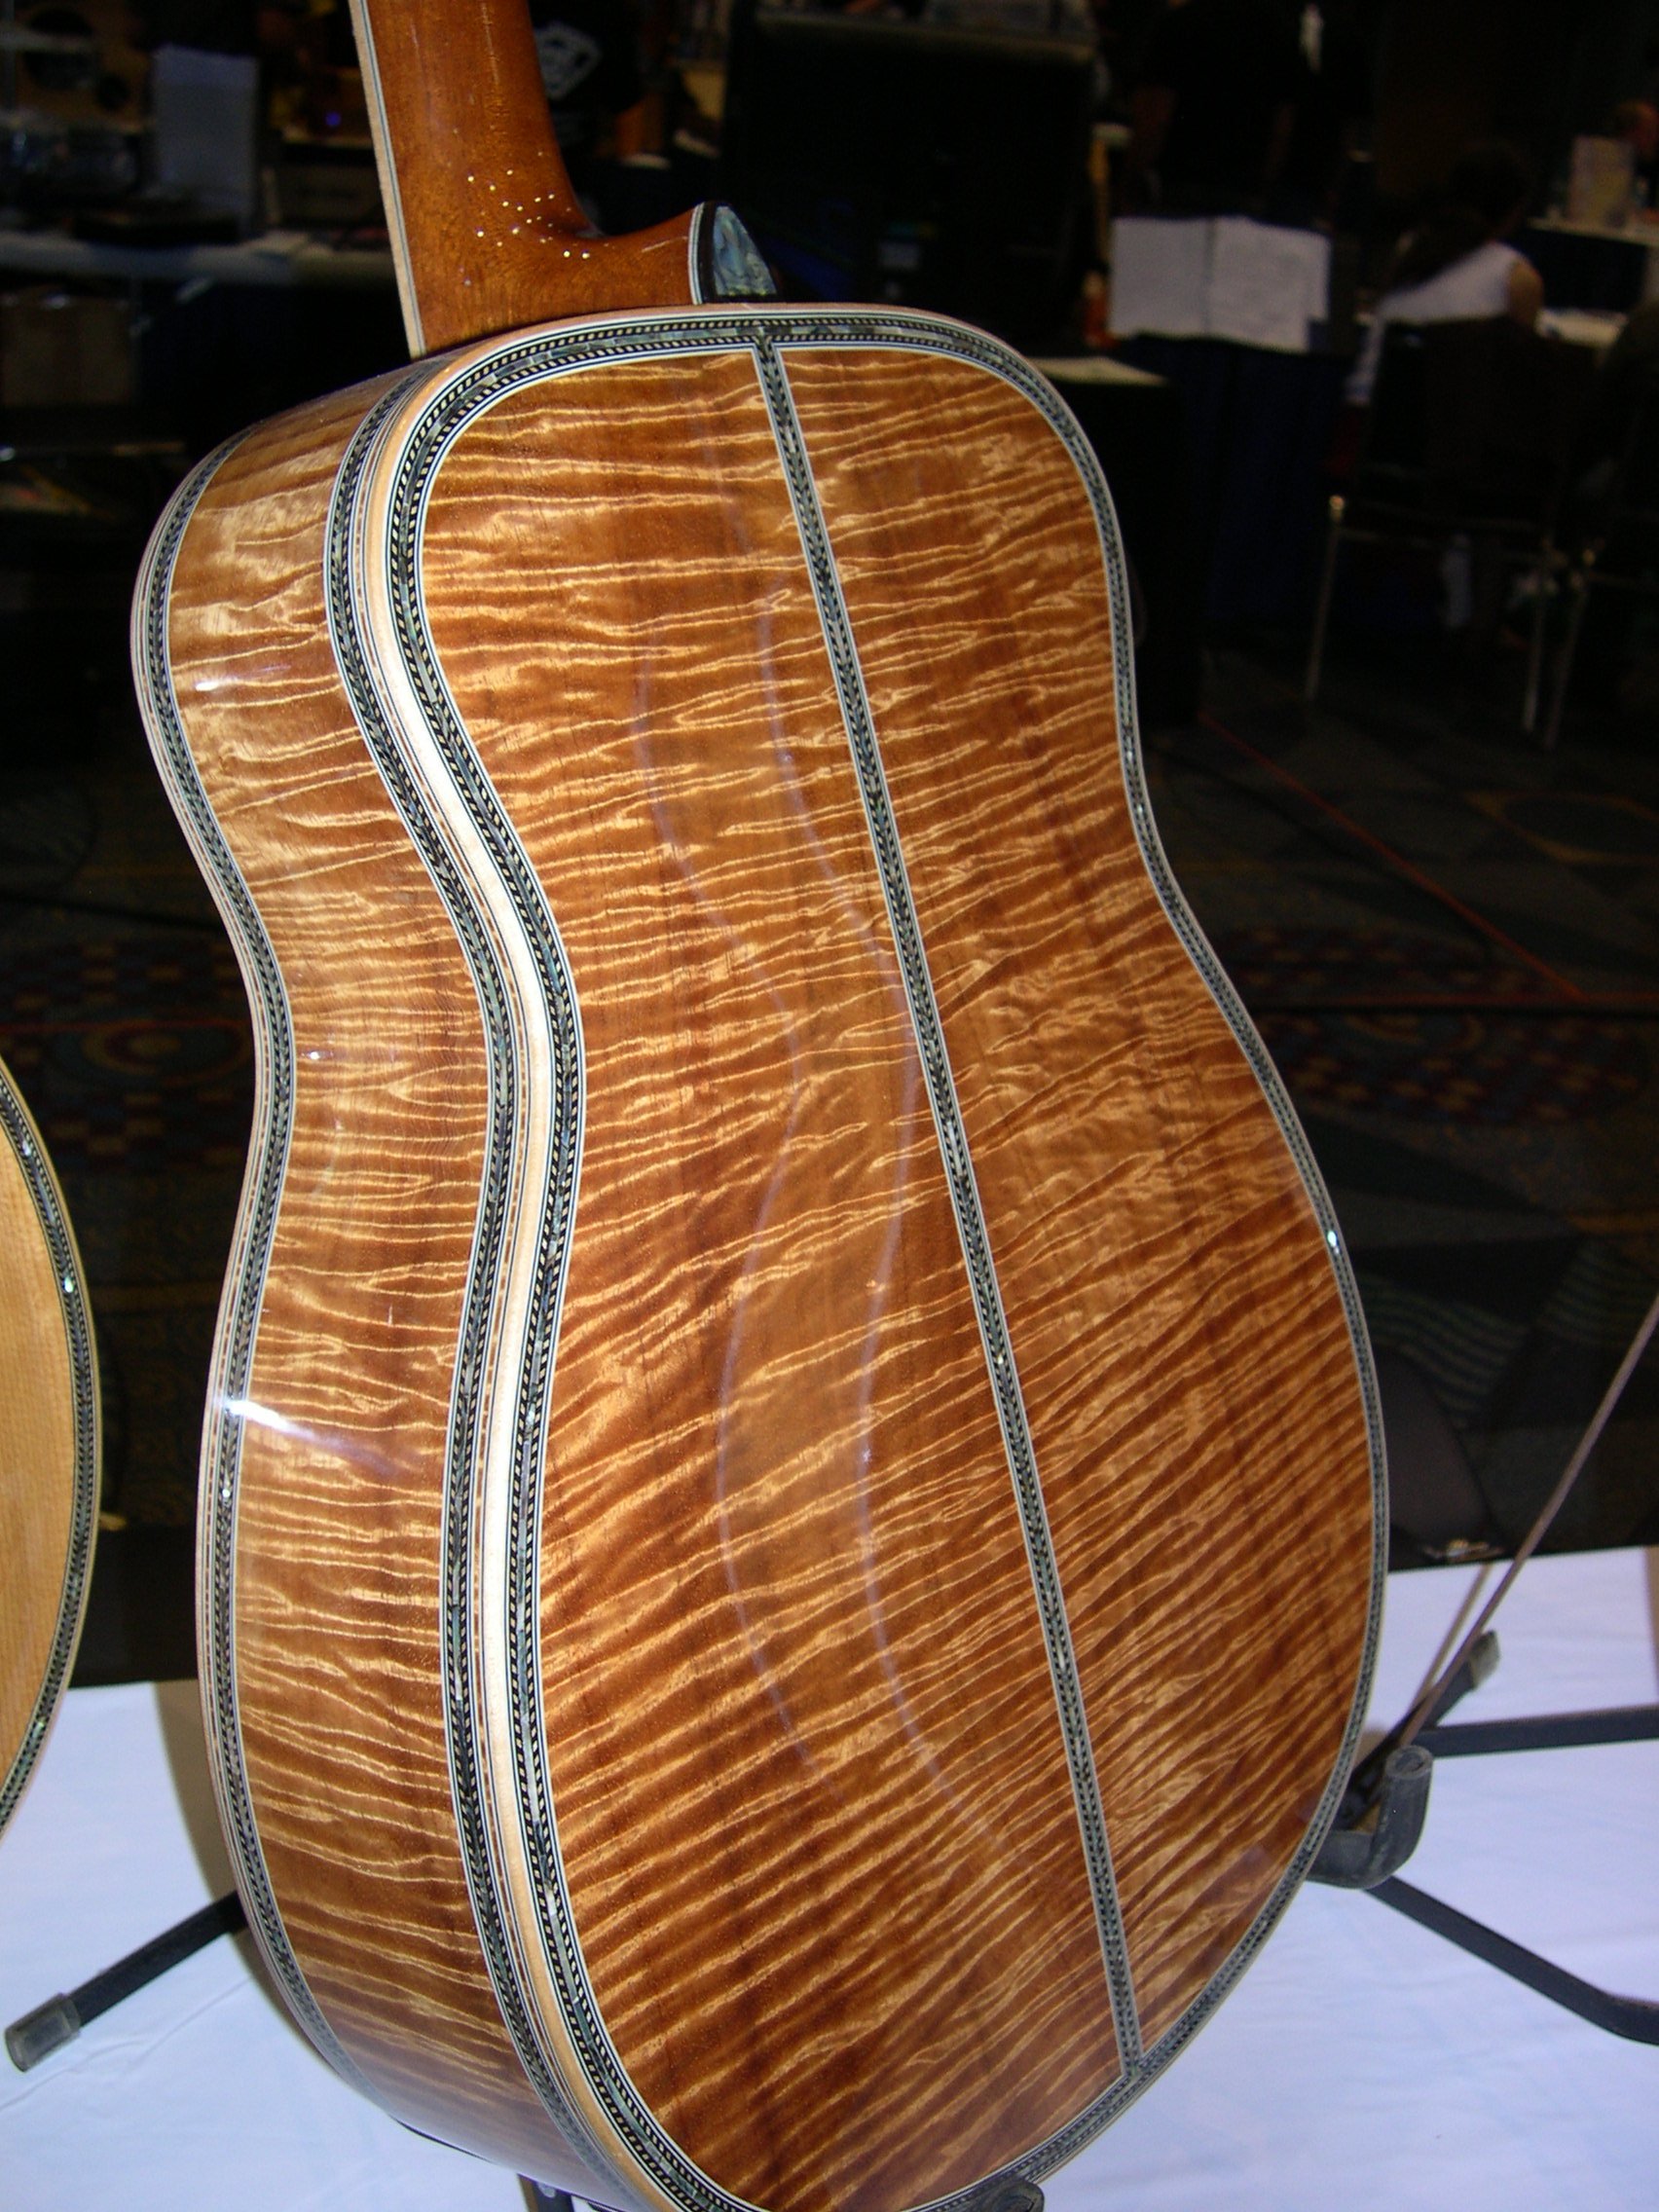 Bozo guitars in Miami